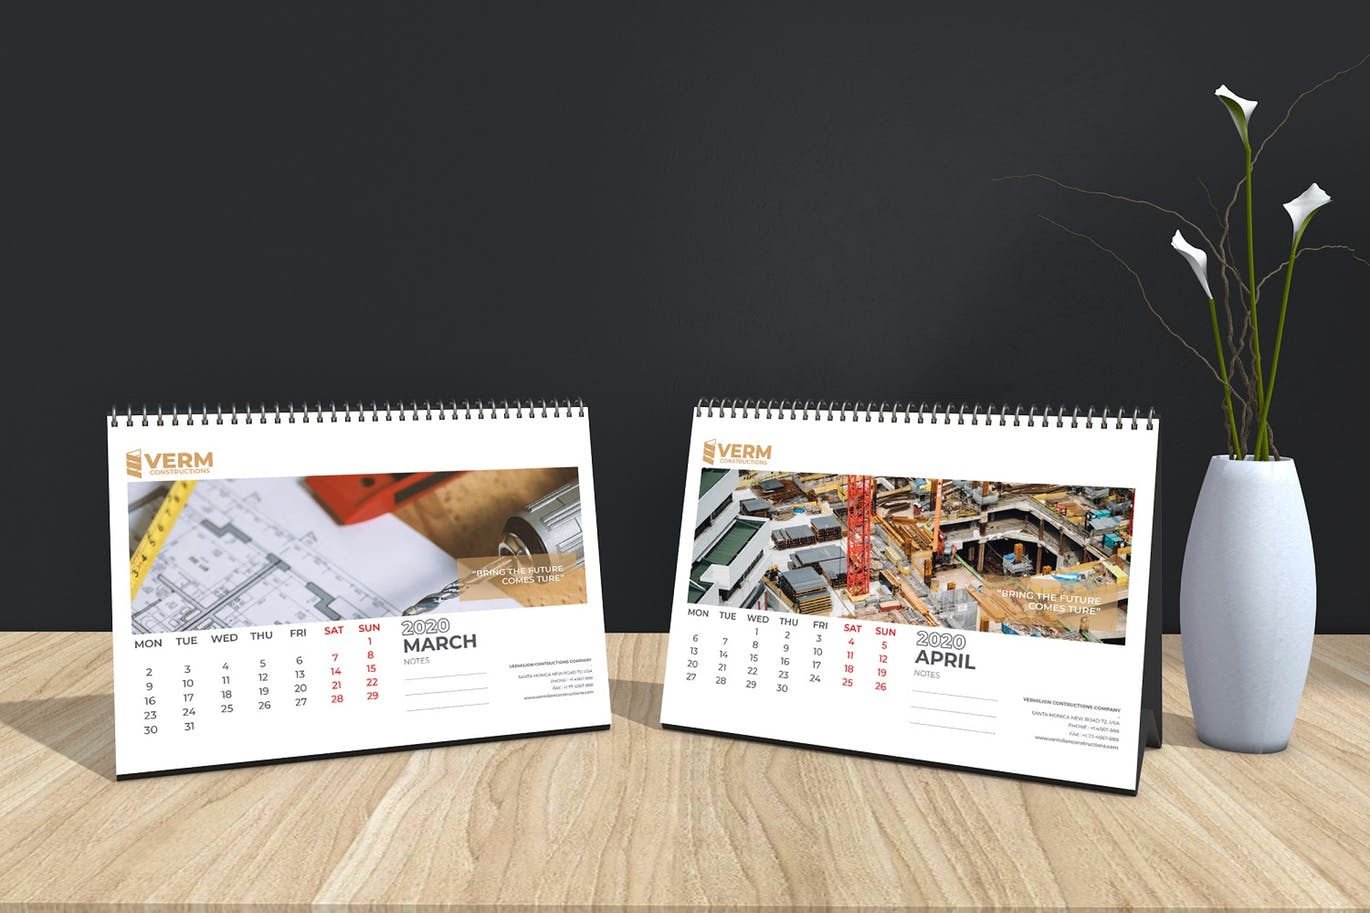 2020年建筑主题台历&挂墙日历表设计模板 Construction Wall & Table Calendar 2020插图(10)